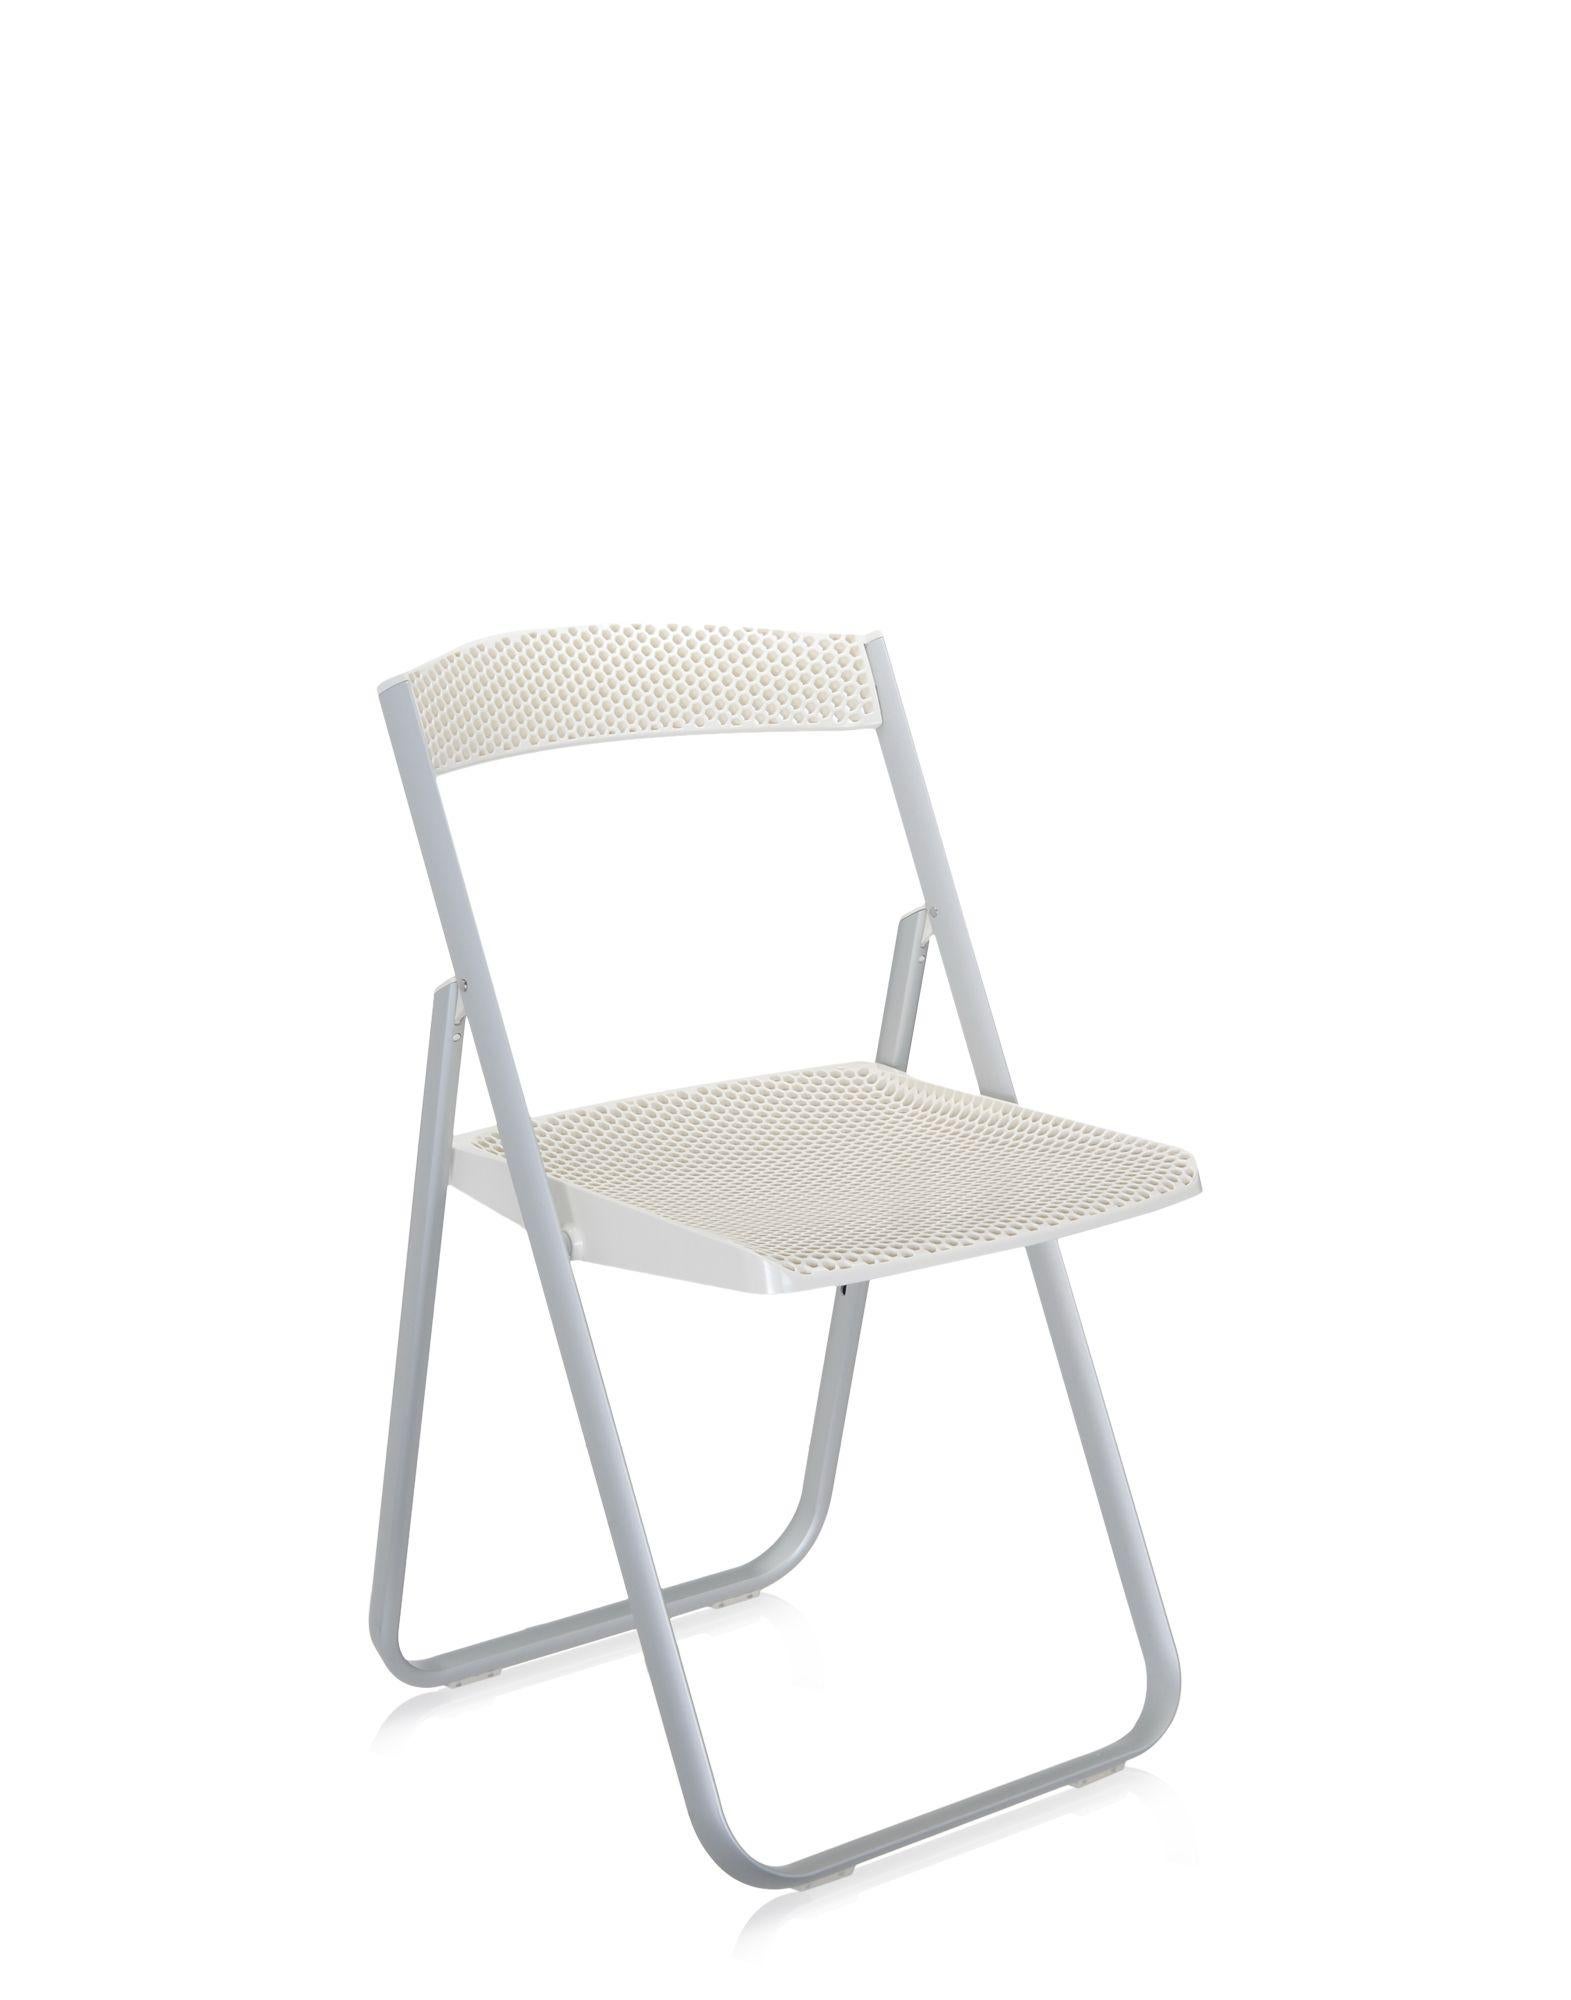 Honeycomb est une chaise pliante polyvalente, légère et facile à utiliser. Son cadre est en aluminium, tandis que son dossier et son assise sont en polycarbonate transparent ou teinté dans la masse. Le raffinement de la texturation structurée,